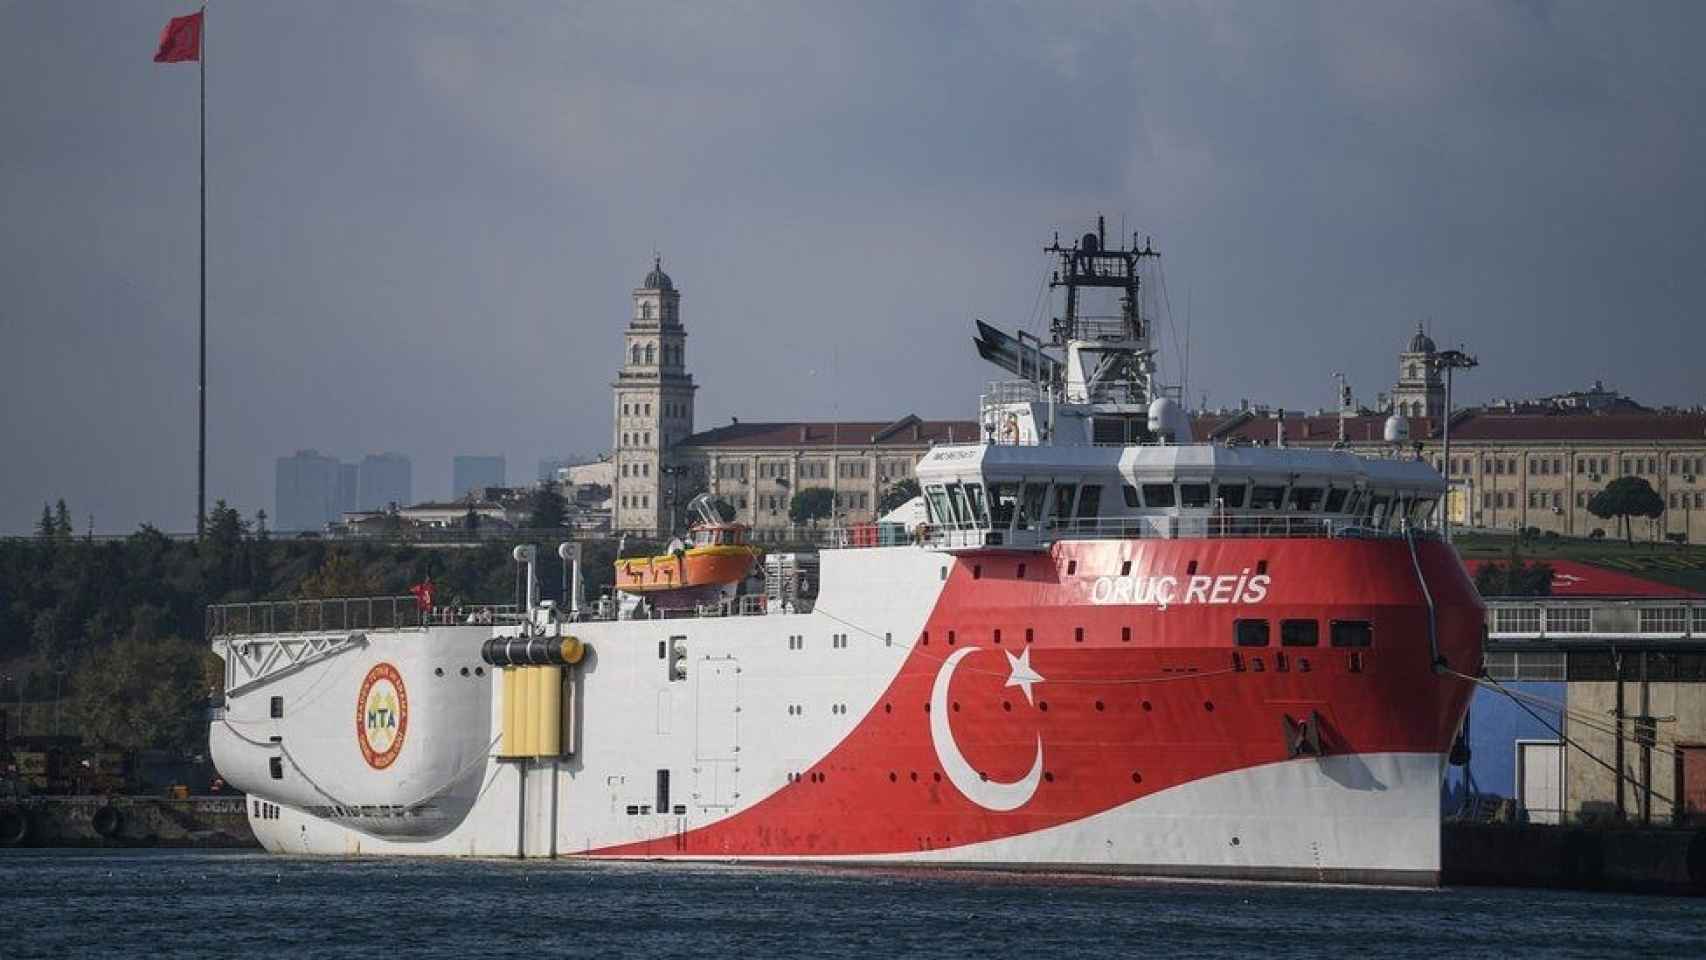 Barco de investigación y exploración Oruc Reis de Turkish Petroleum